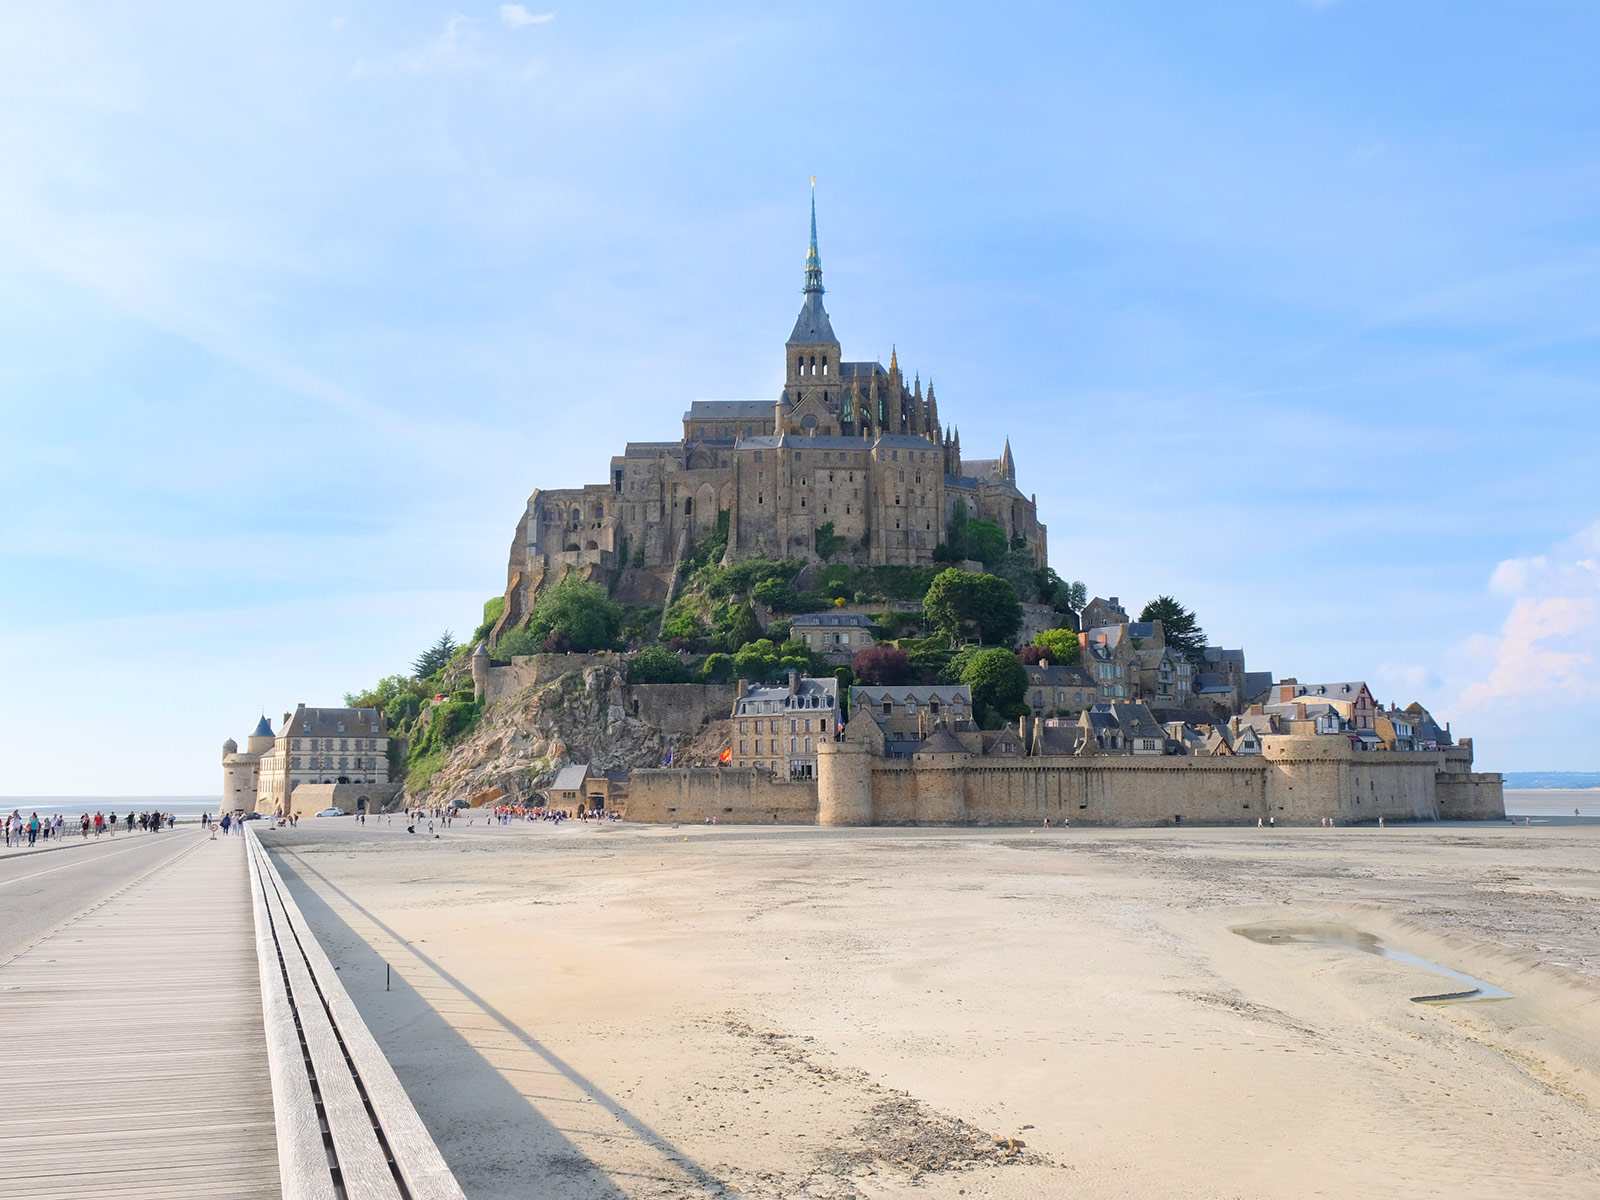 Visite du Mont-Saint-Michel dans le cadre de la Traversée moderne d'un vieux pays, parcours touristique et artistique mis en place par Le Voyage à Nantes